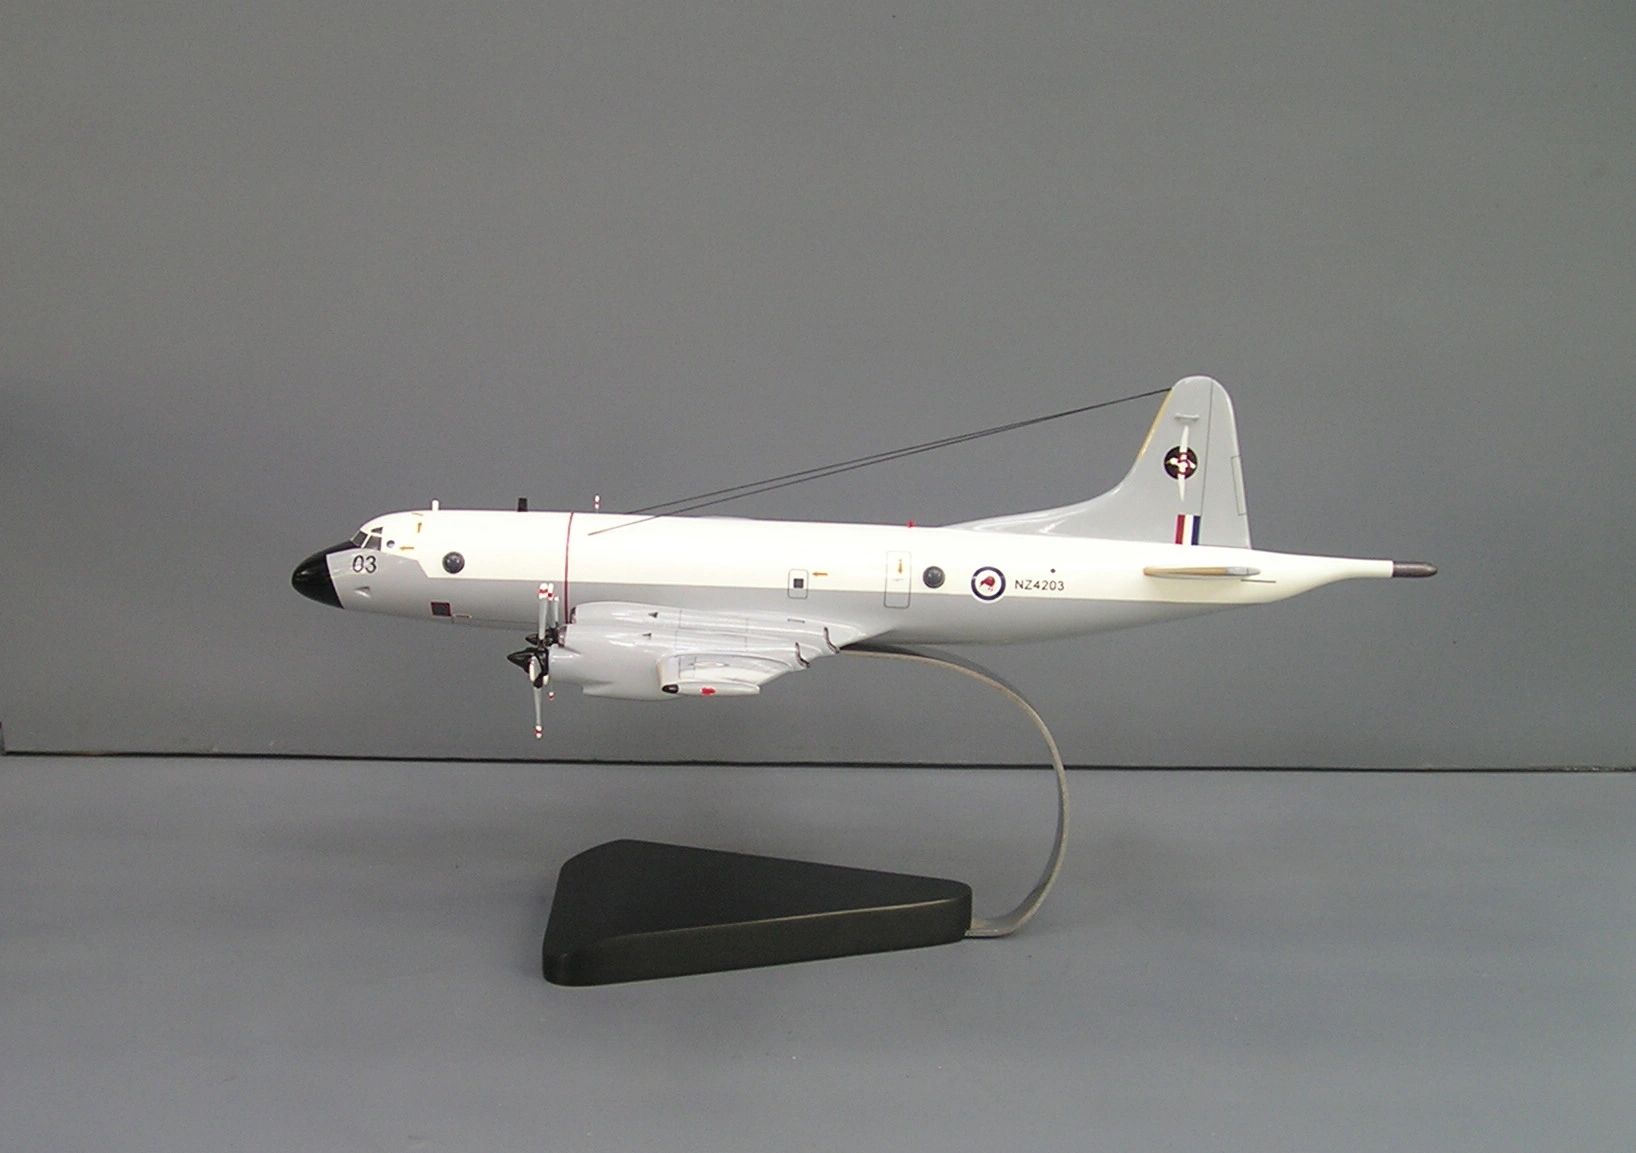 P-3 Orion desktop models